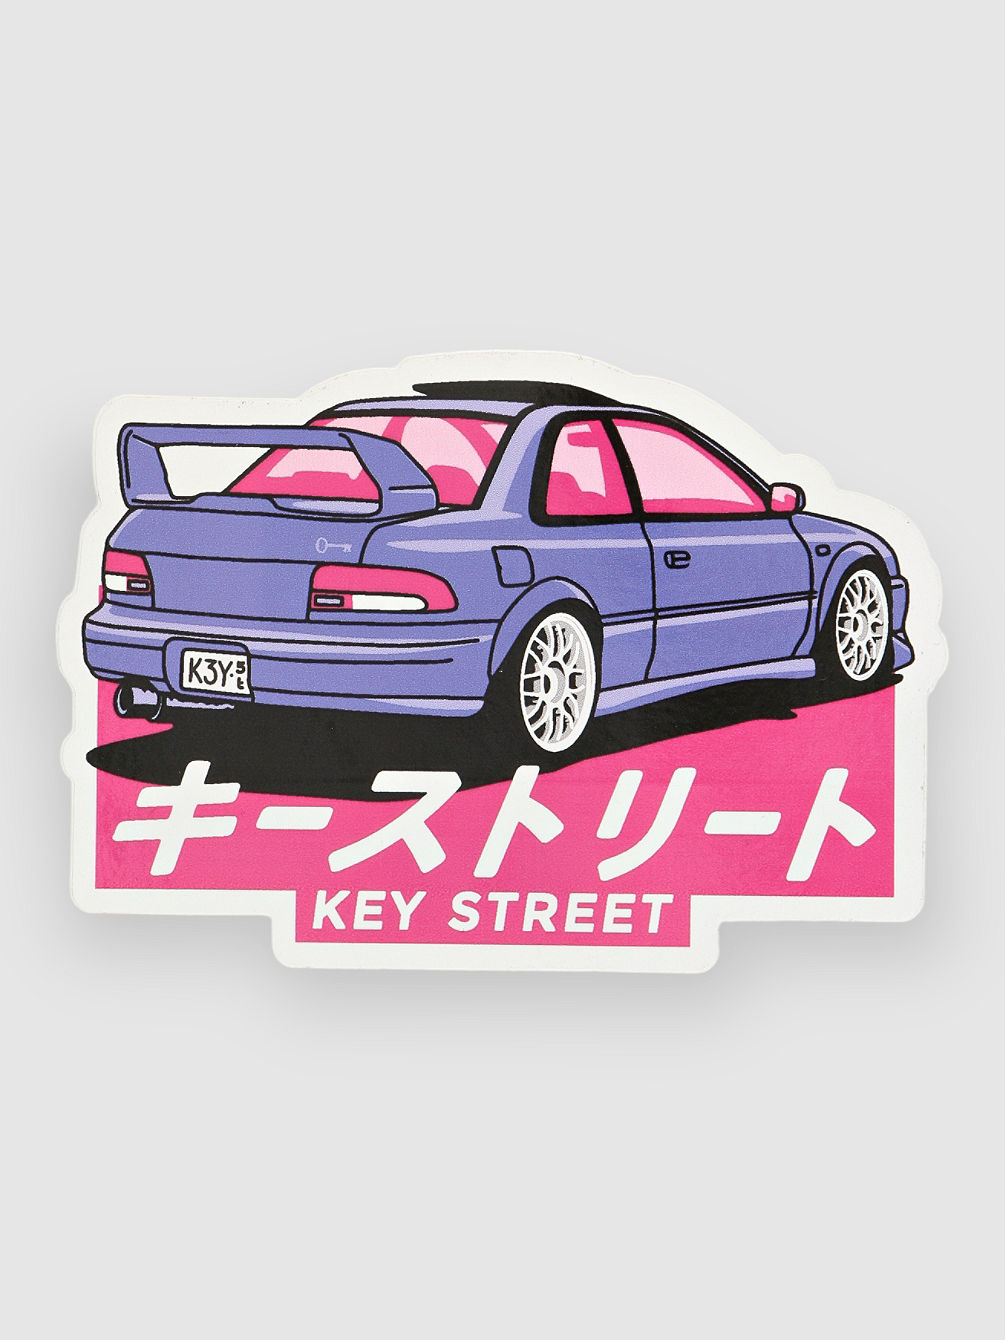 Seiza Sticker